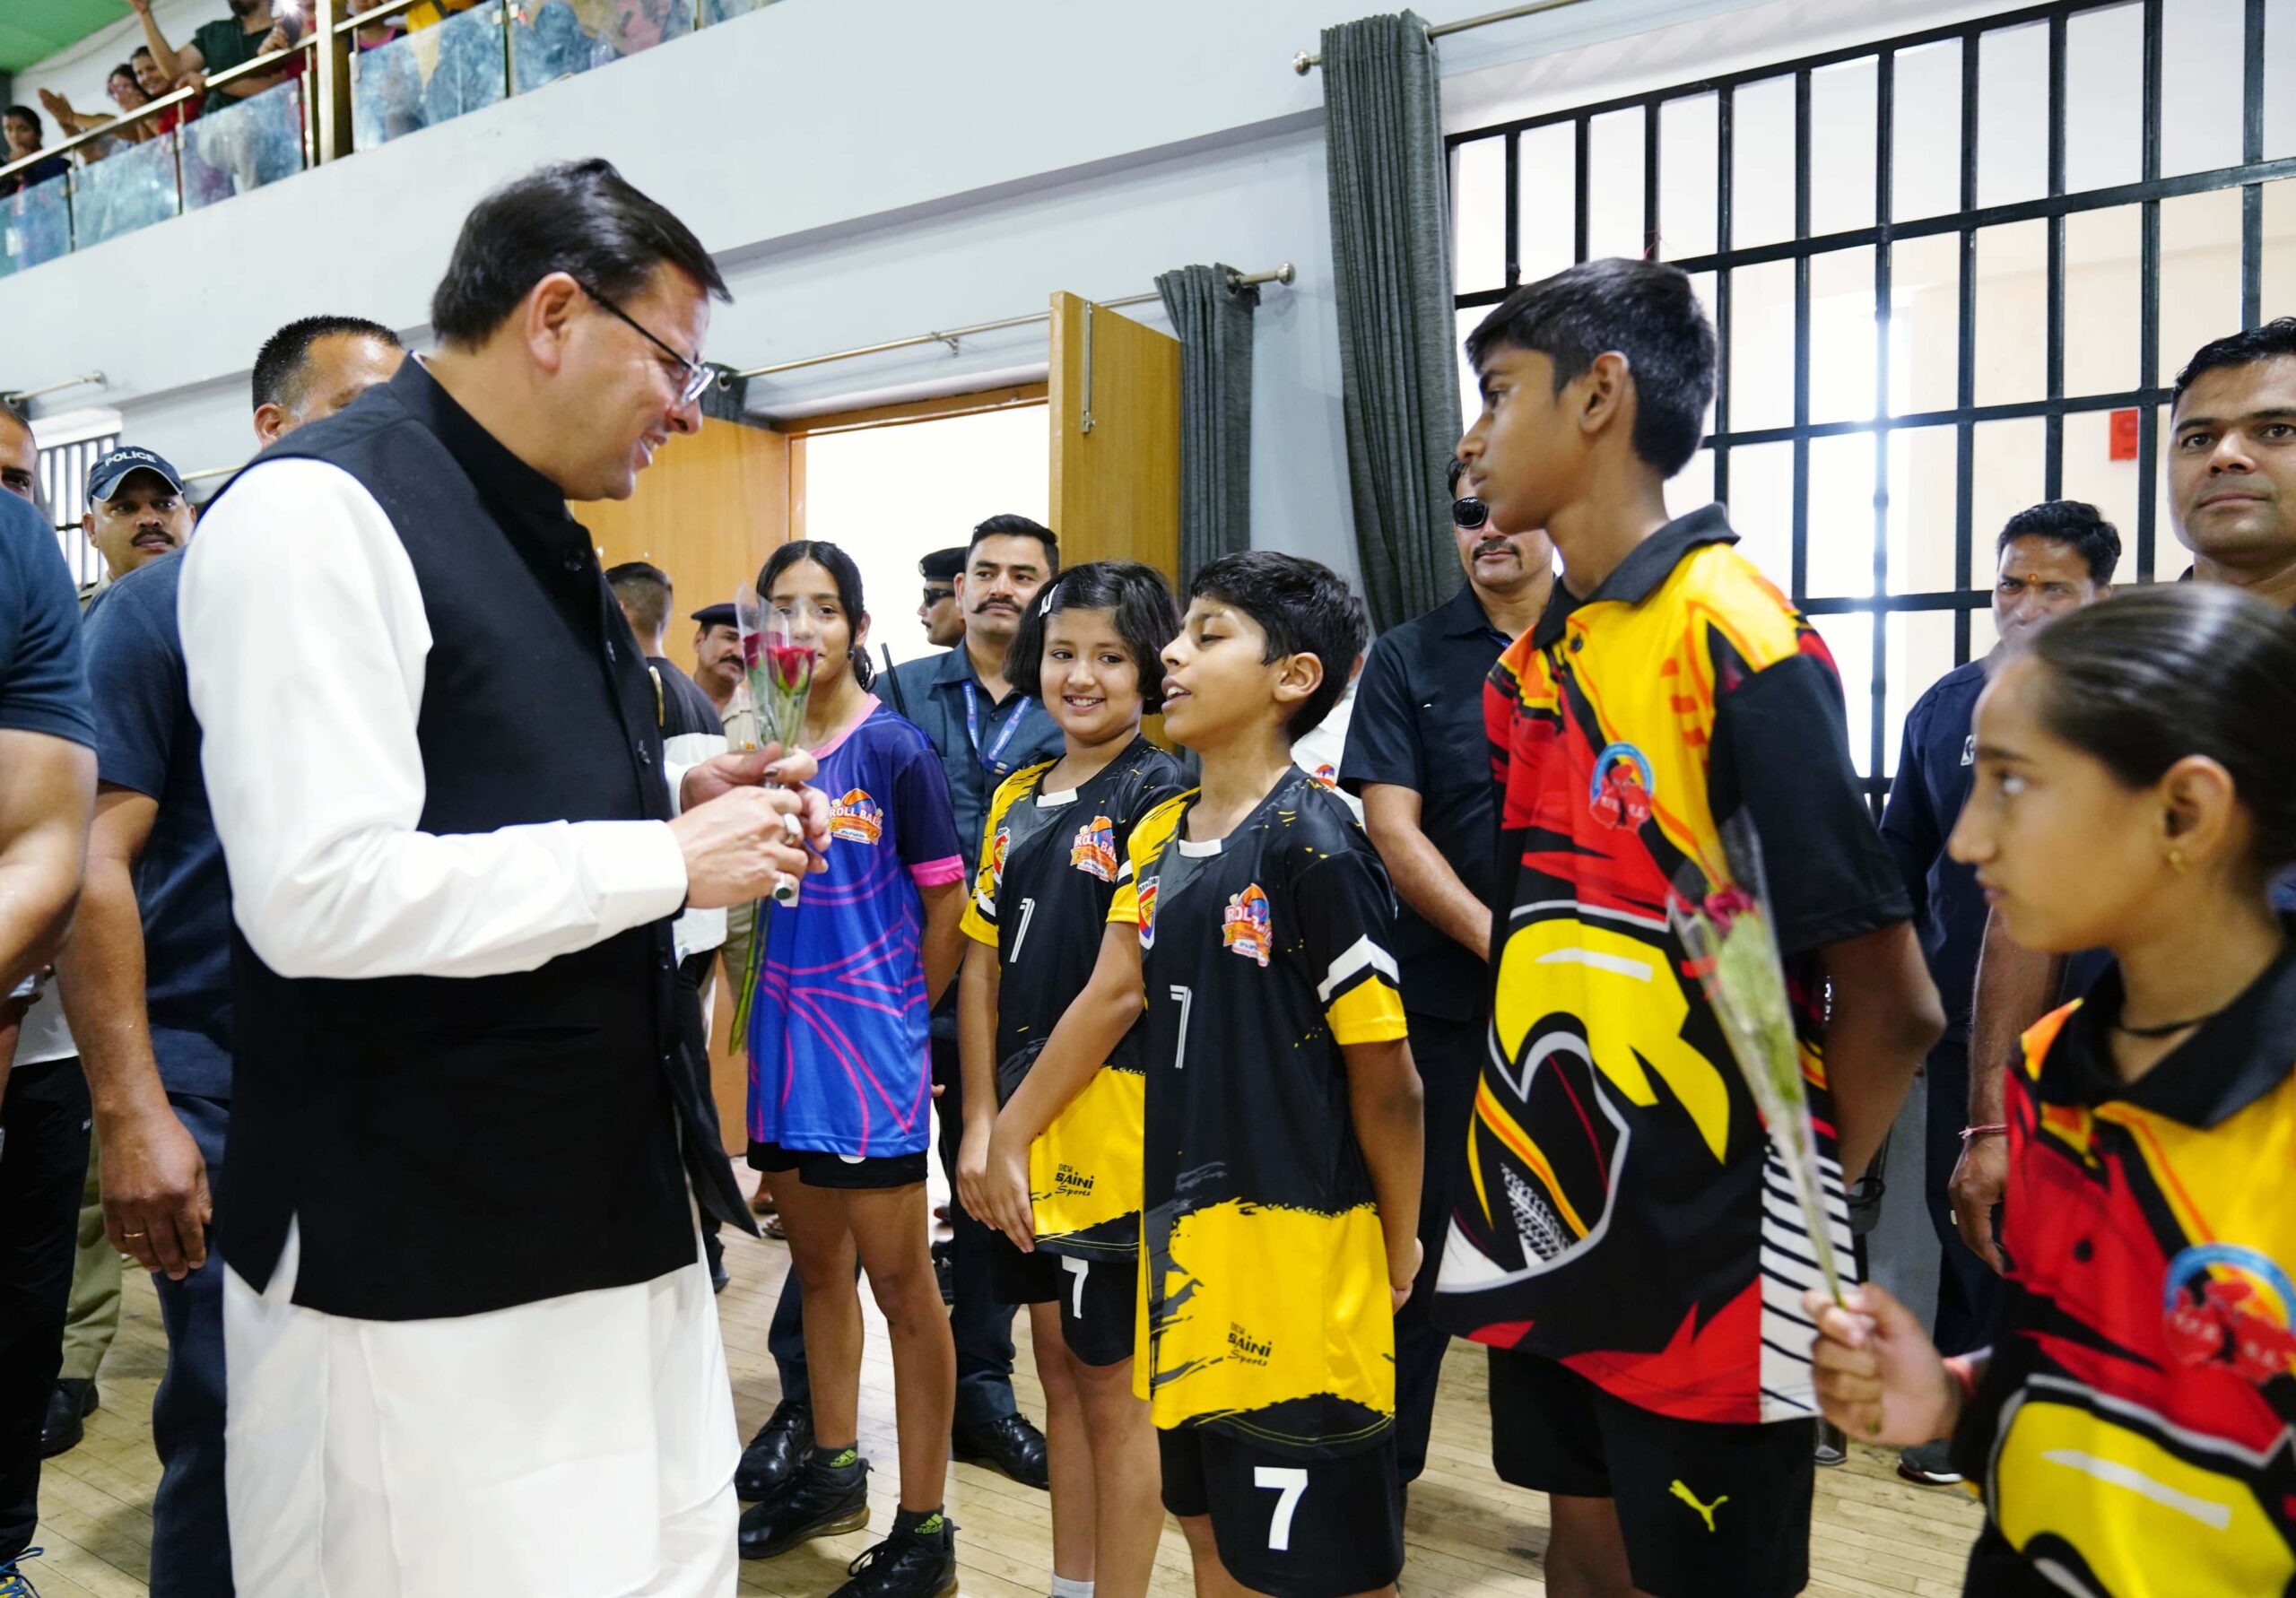 मुख्यमंत्री श्री पुष्कर सिंह धामी ने बॉयज एंड गर्ल्स नेशनल रोल बाल चौंपियनशिप में प्रतिभाग करते हुये खिलाड़ियों का उत्साहवर्द्धन किया